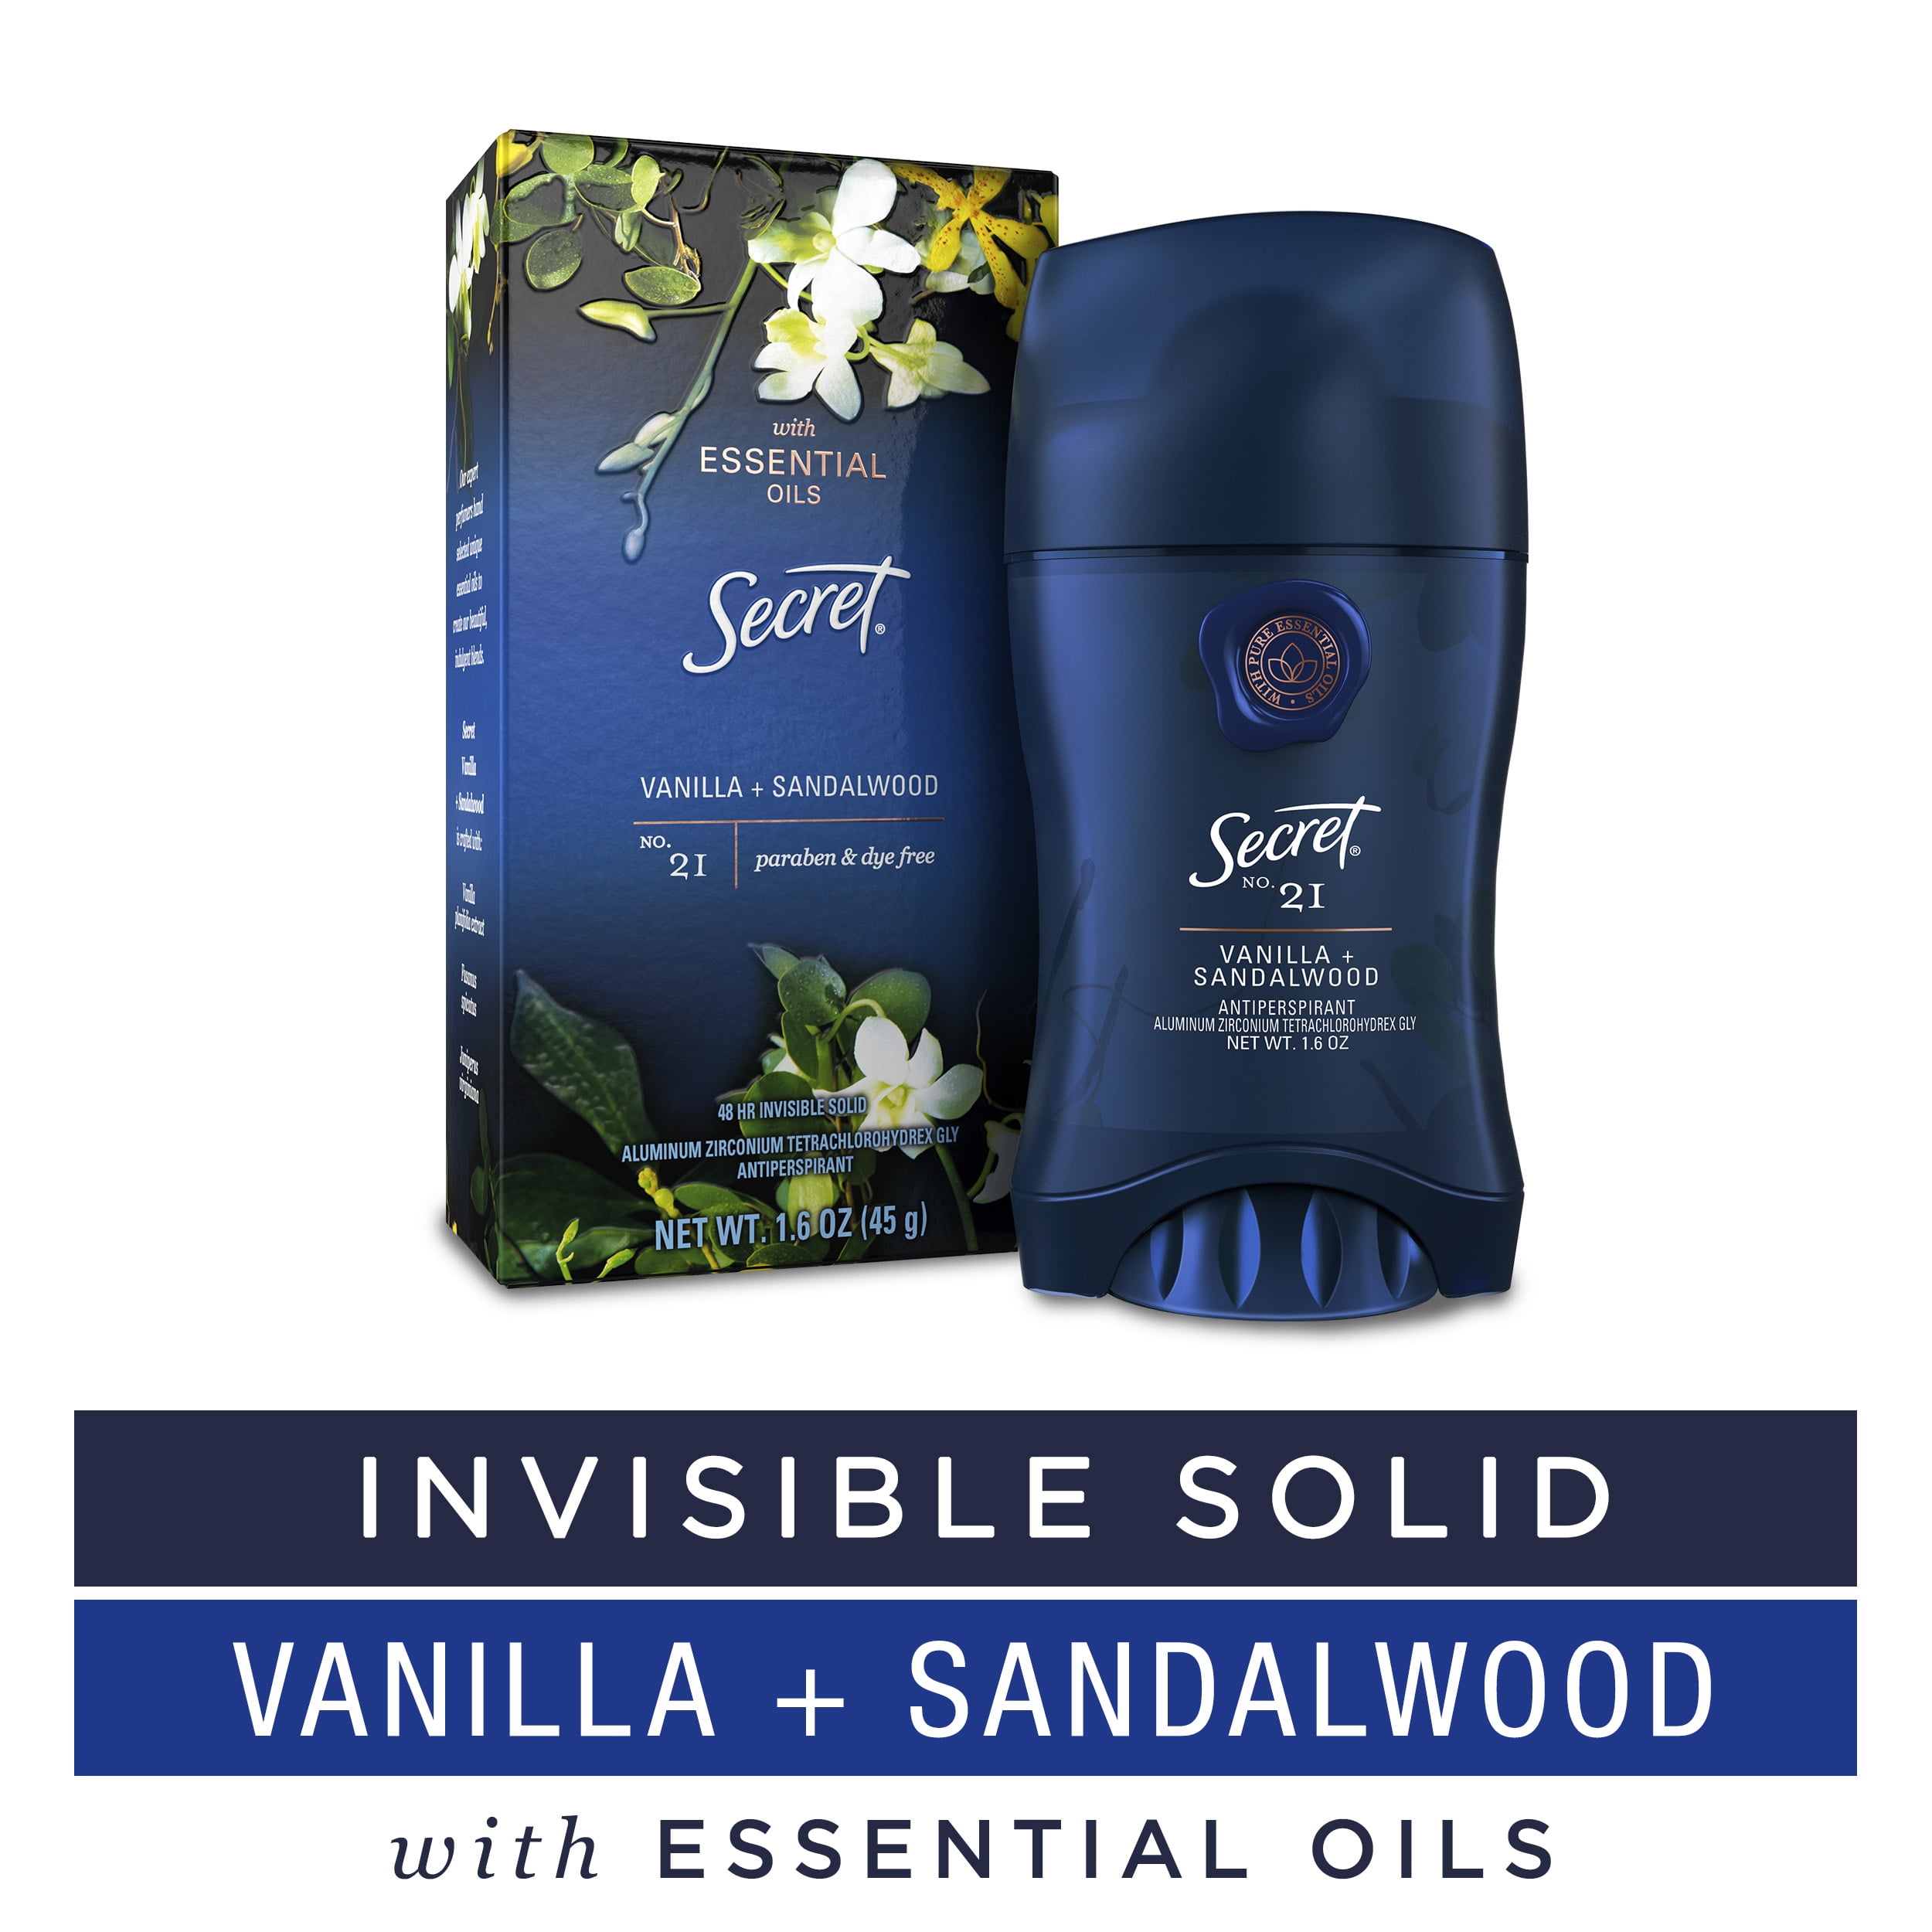 vanilla scented deodorant｜TikTok Search